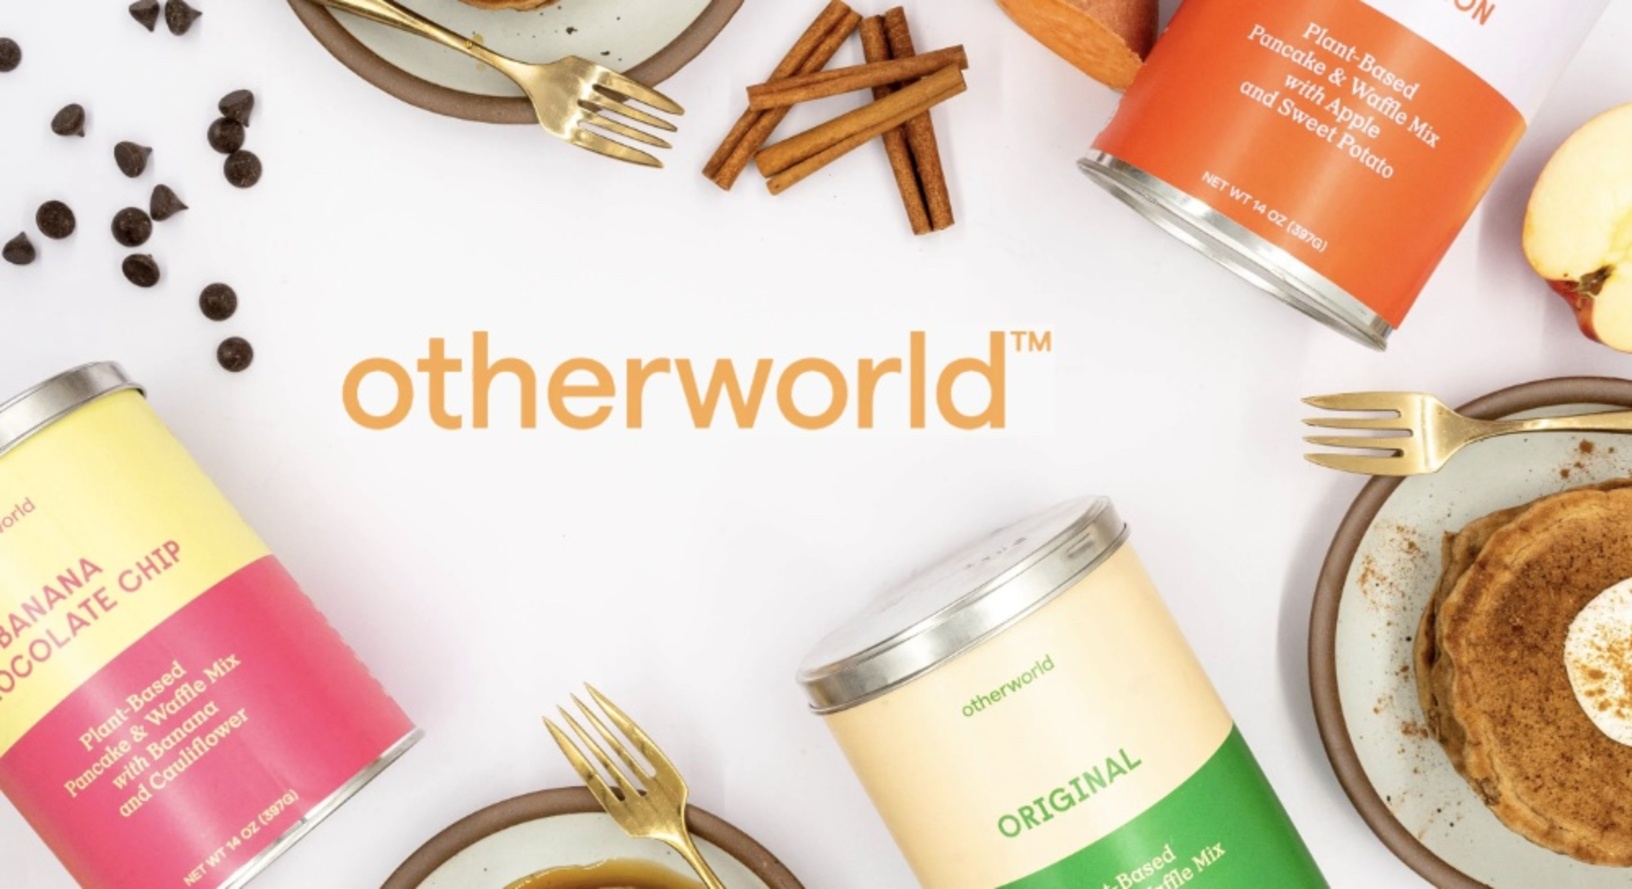 otherworld baking mixes - otherworld coupon code